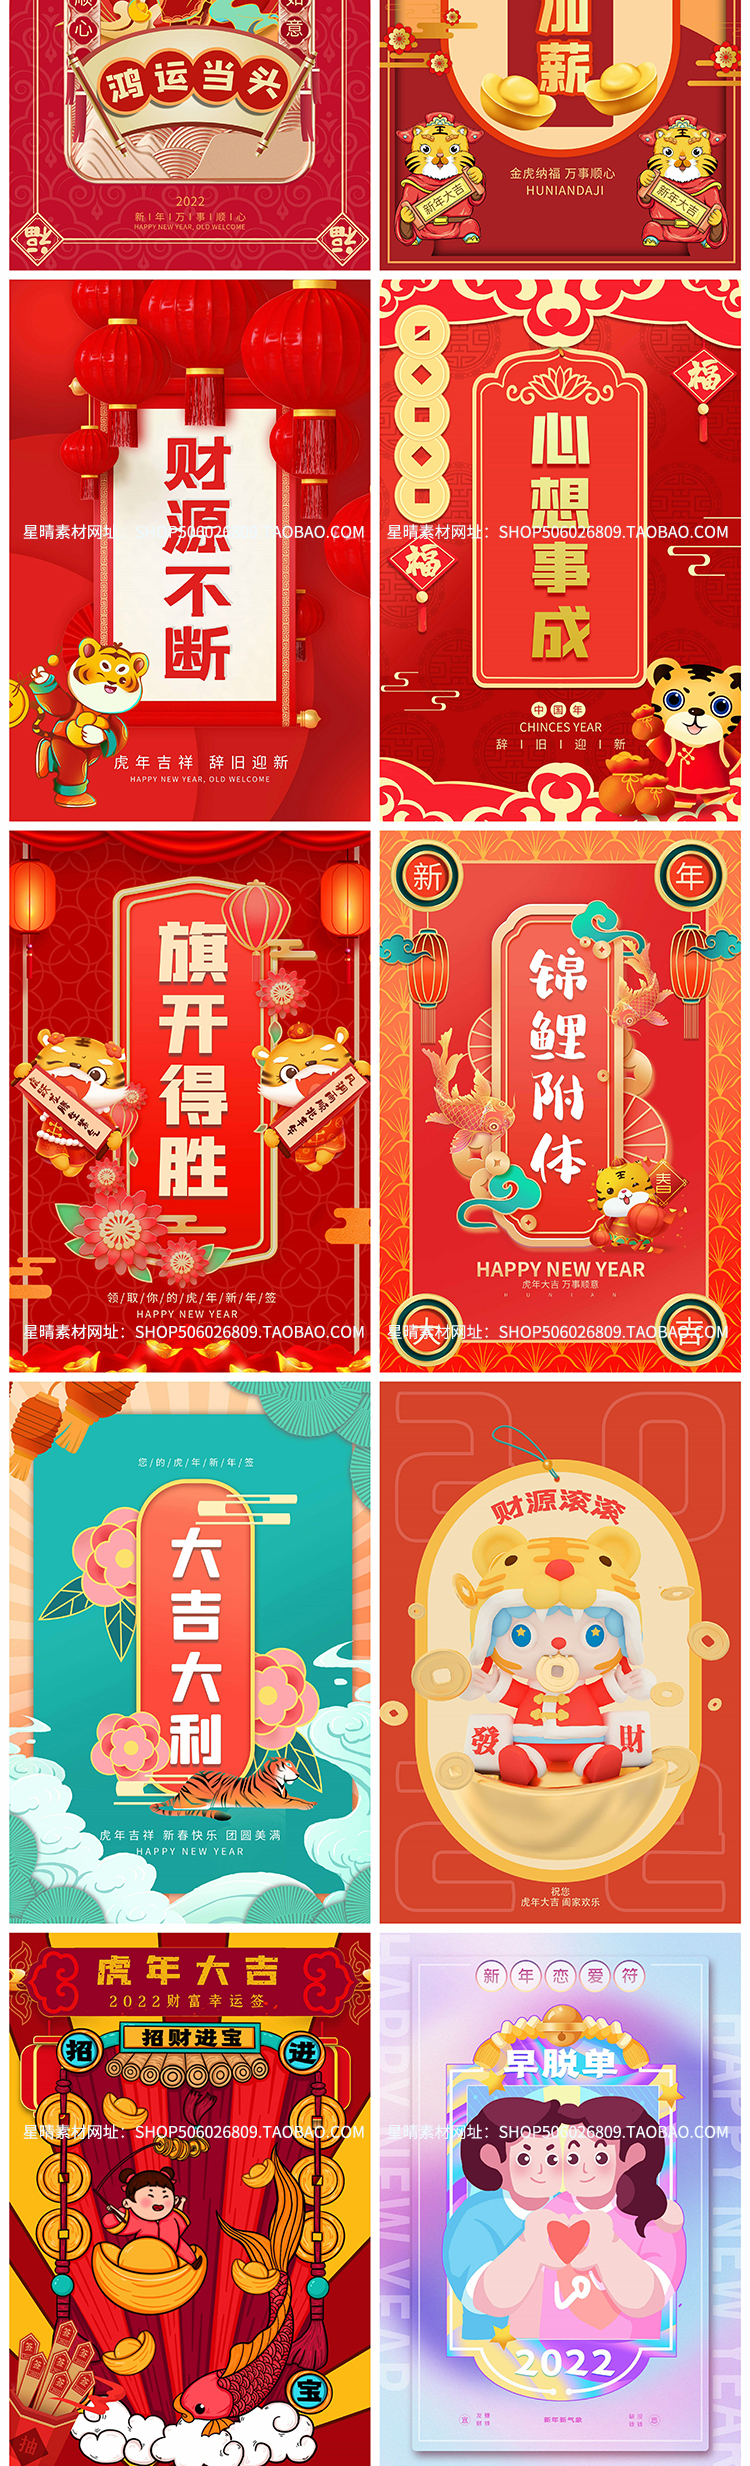 2022虎年春节卡通新年好运祝福语psd设计素材